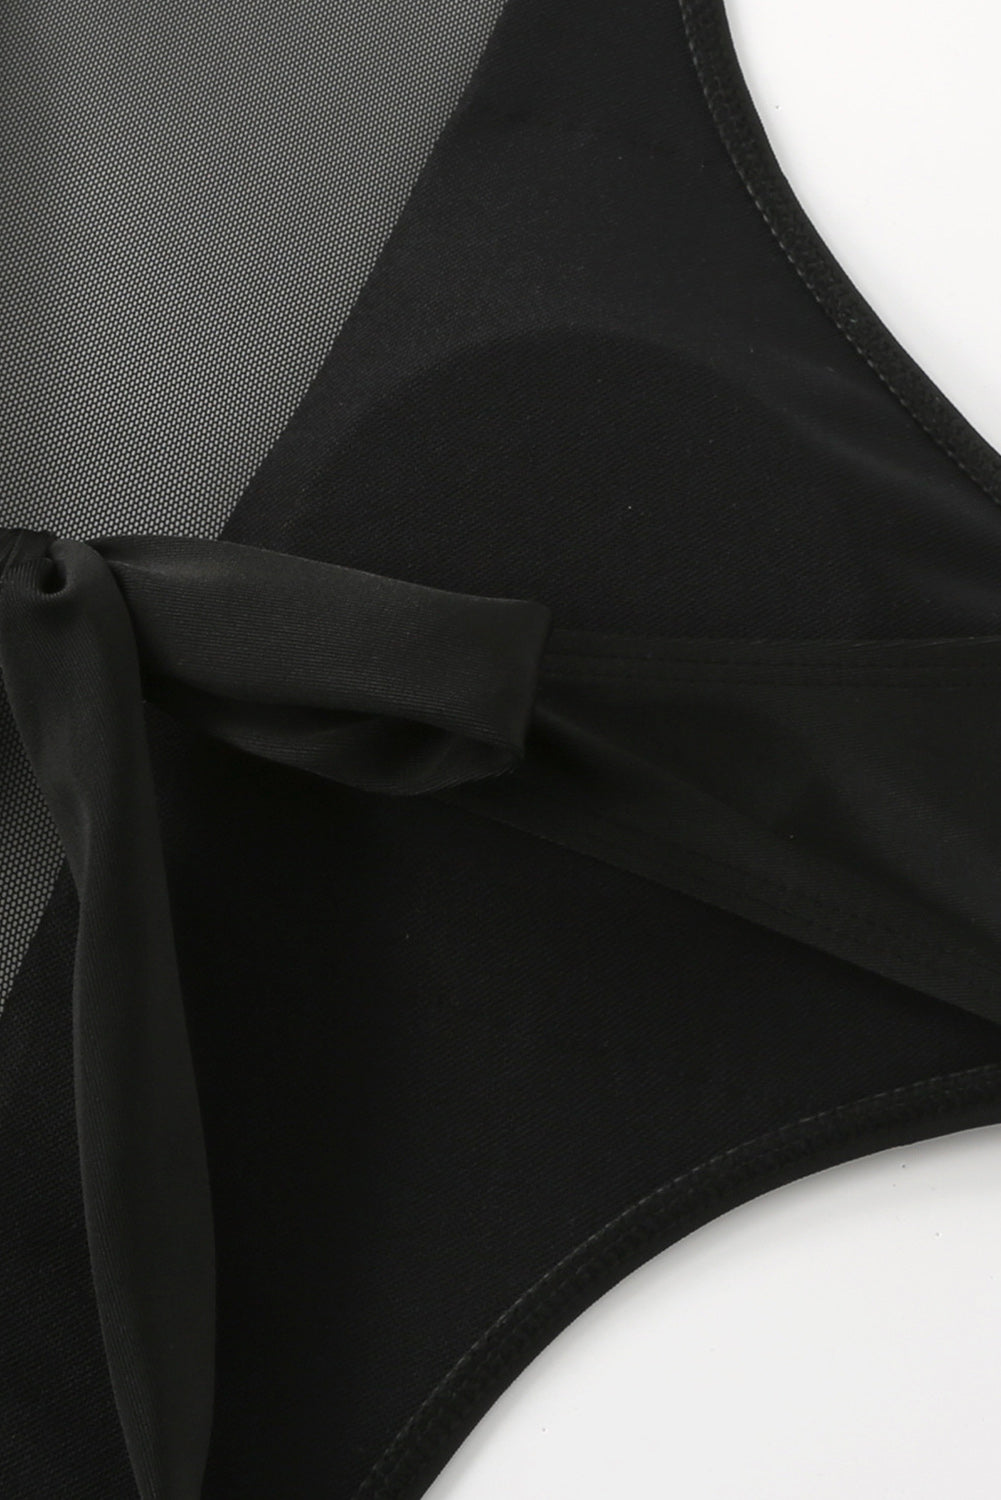 Crni monokini kupaći kostim s mrežastim izrezima i naborima